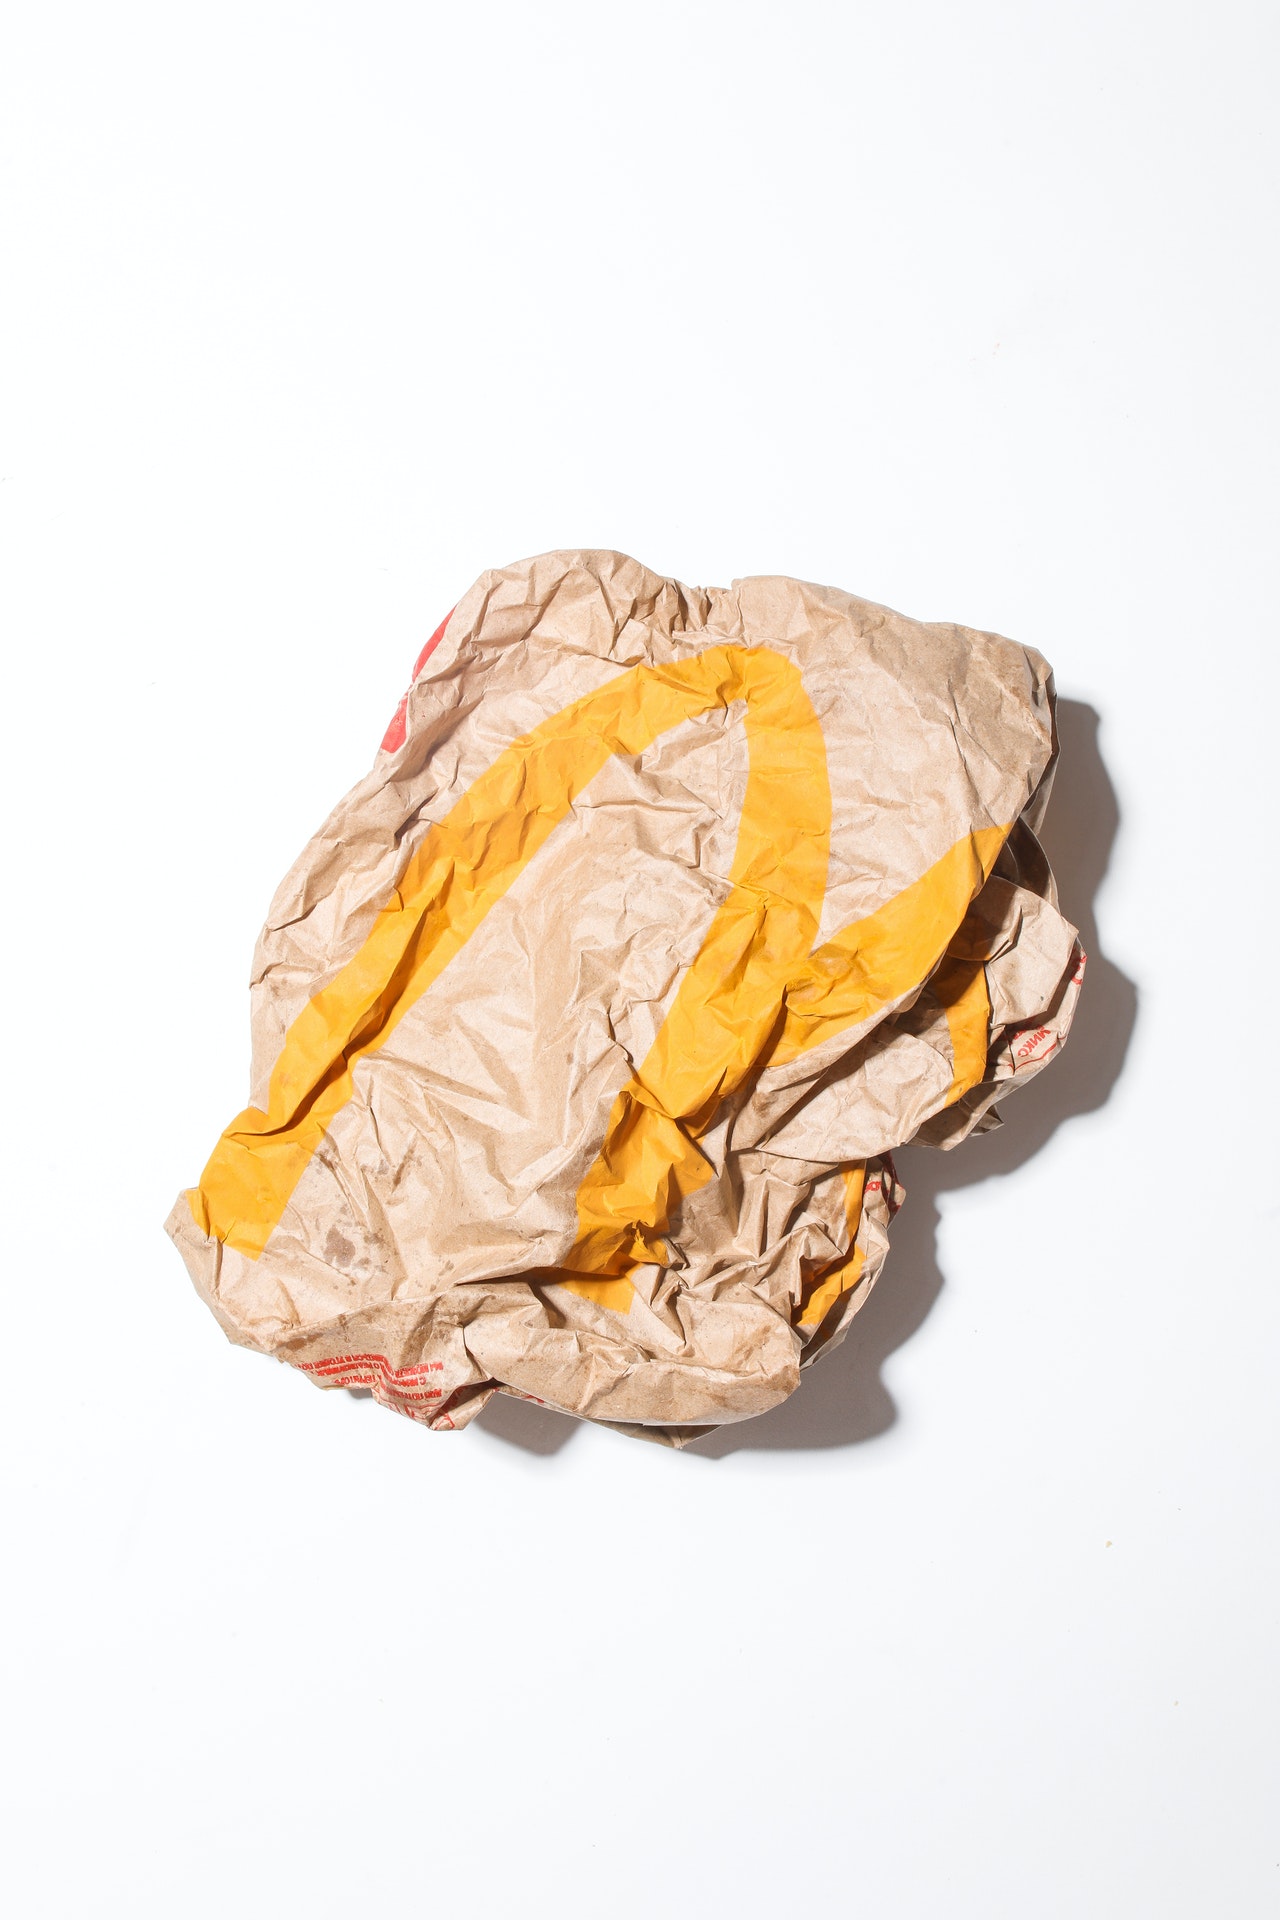 A crumpled up McDonald's bag